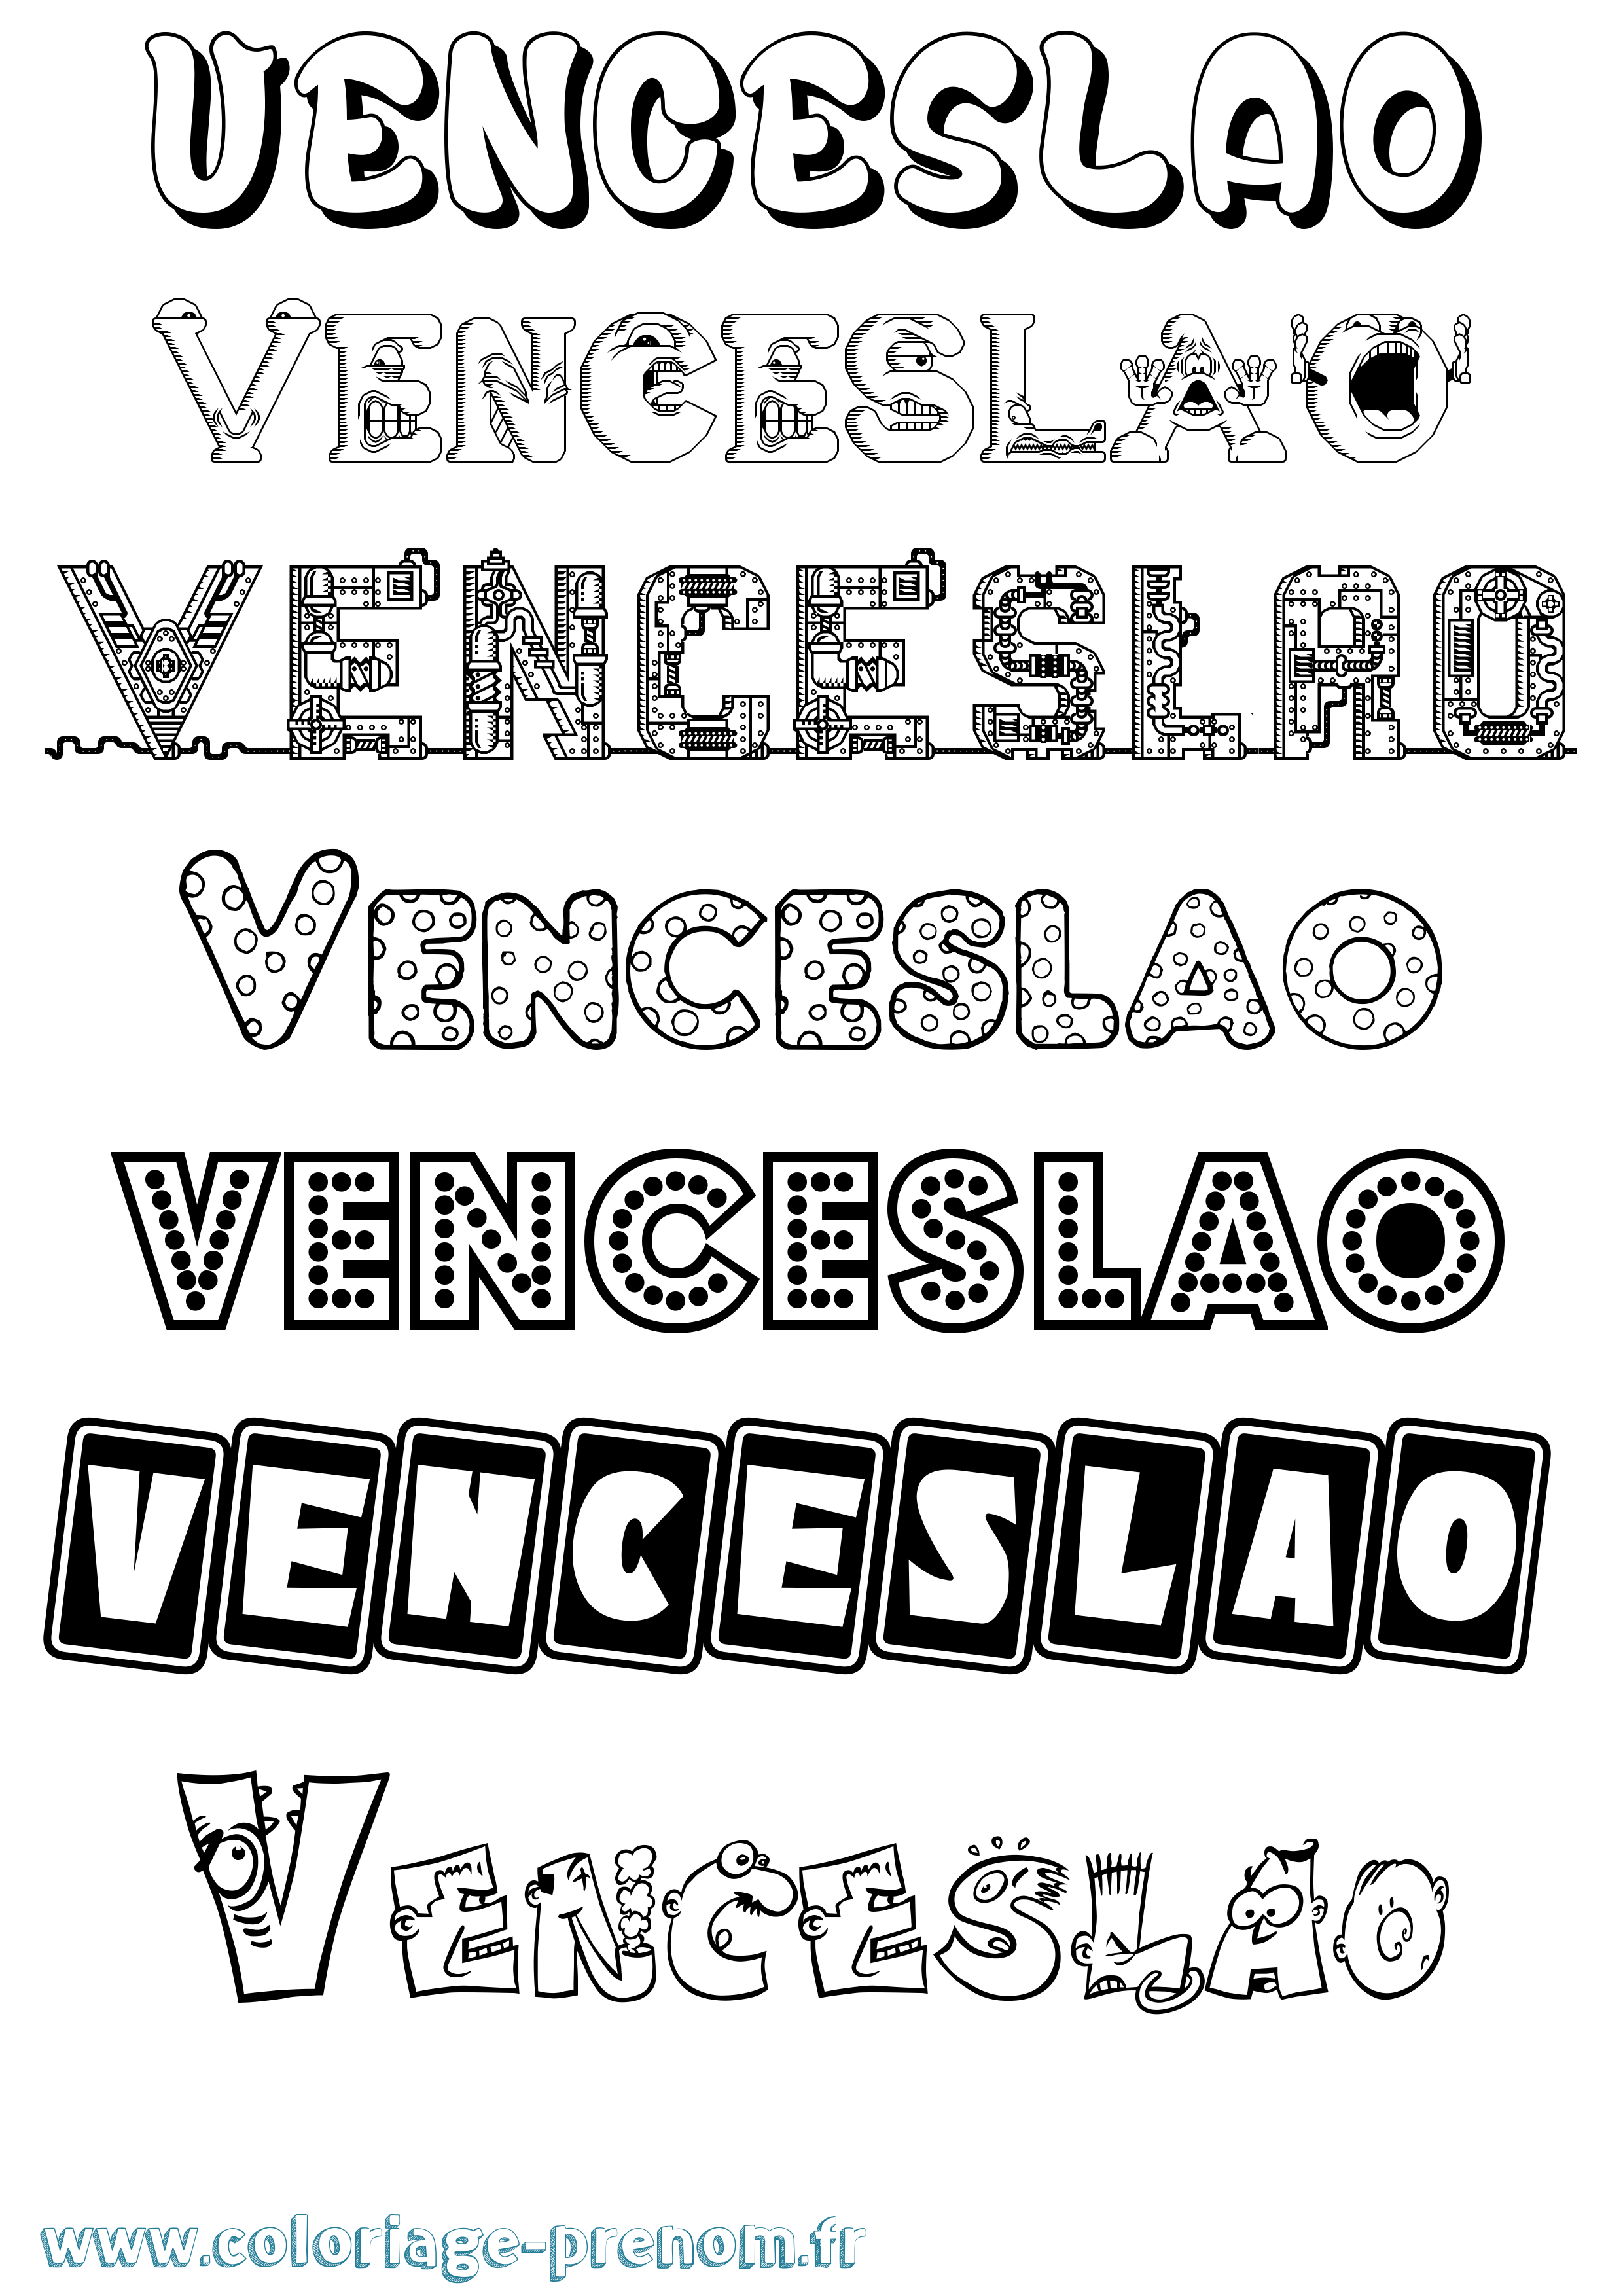 Coloriage prénom Venceslao Fun